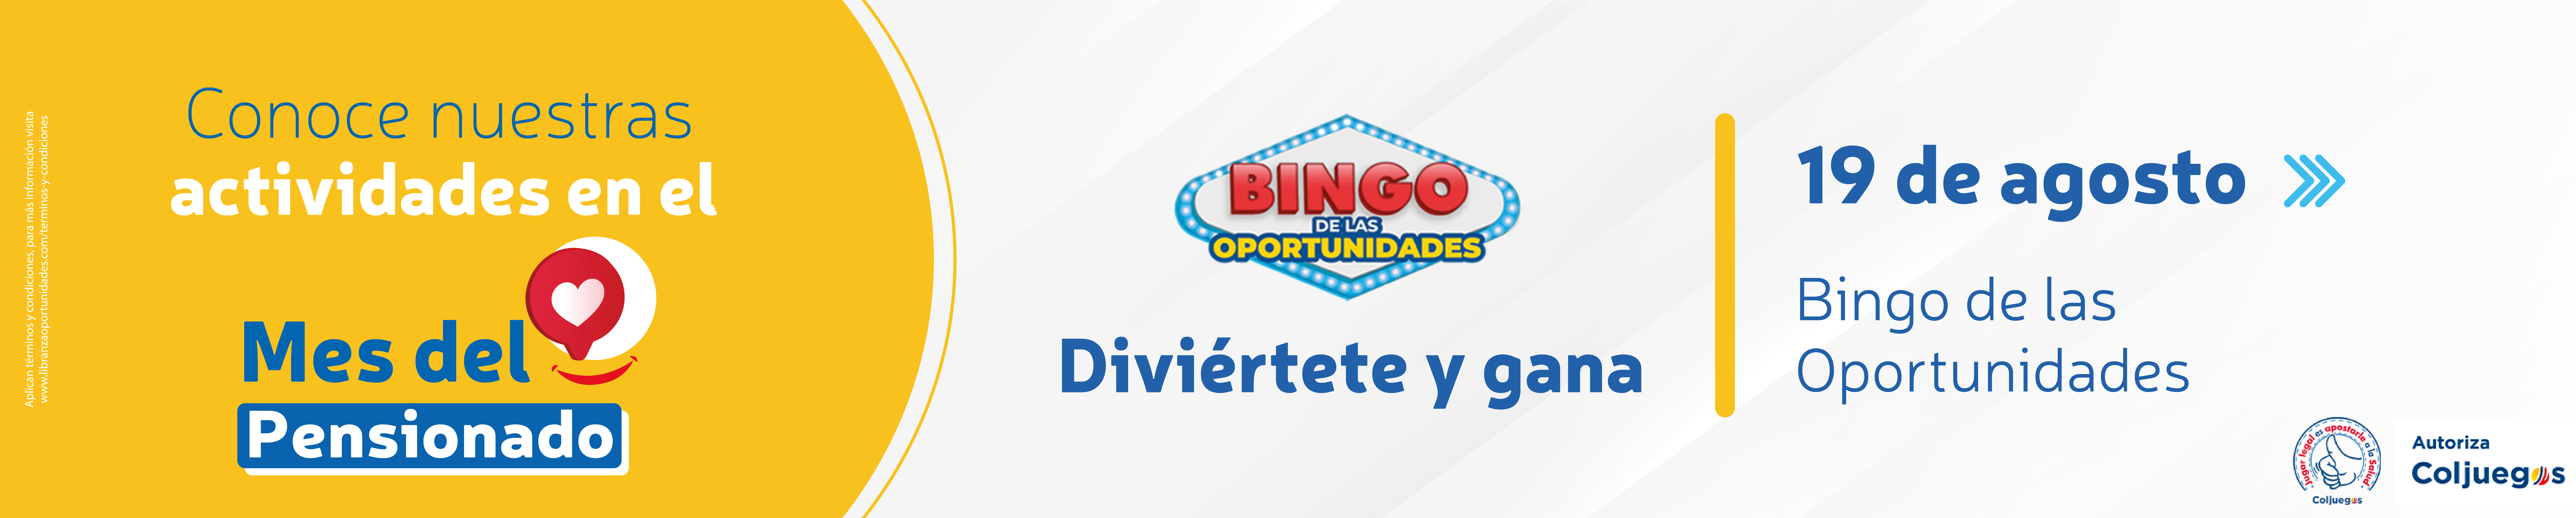 un-bingo-de-las-oportunidades-4